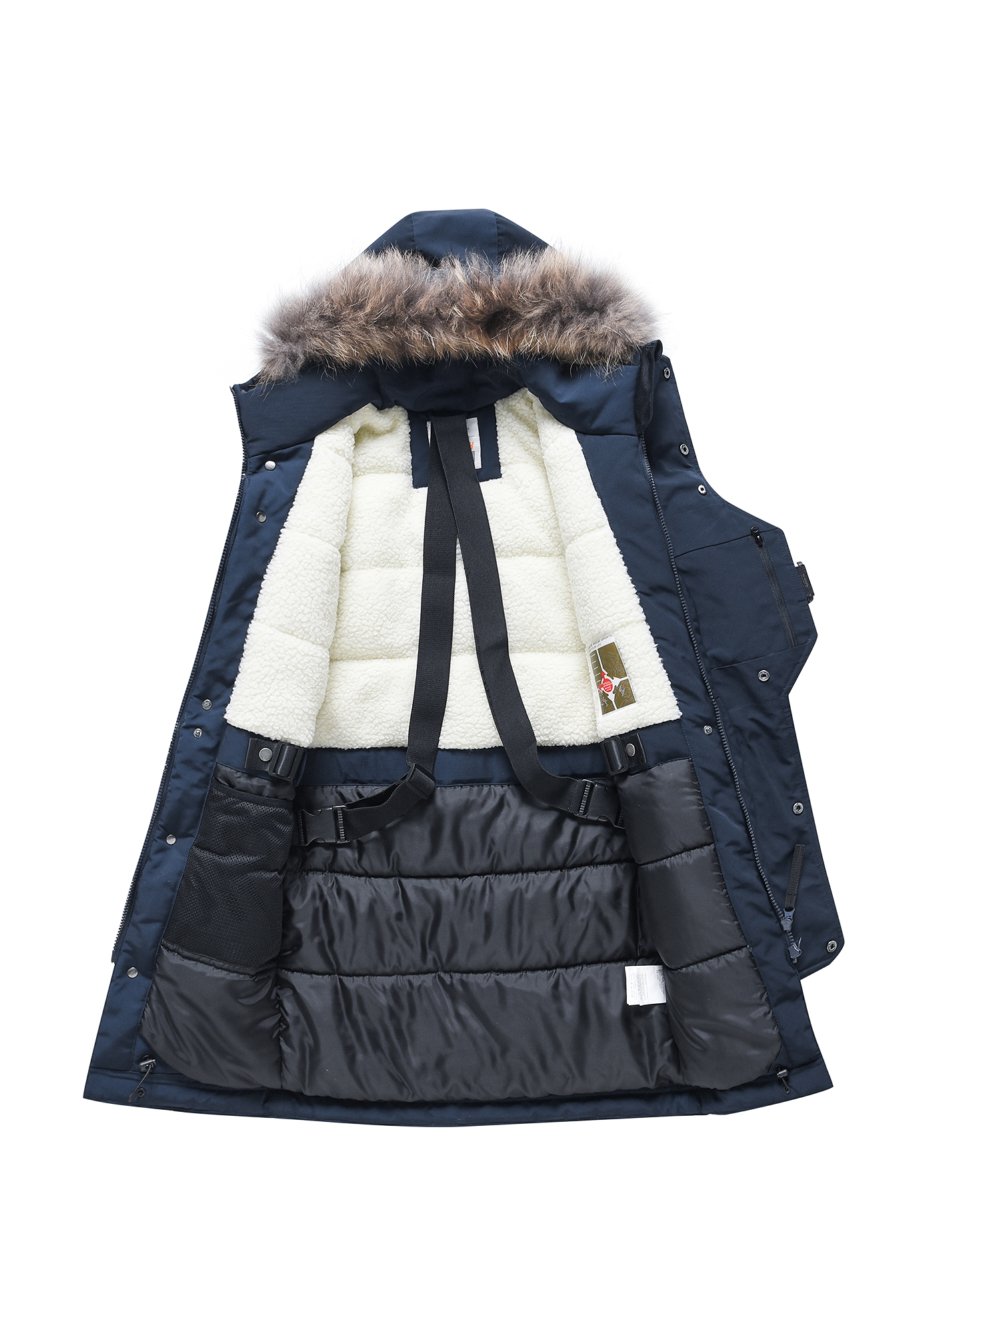 Купить куртку парку для мальчика оптом от производителя недорого в Москве 9341TS 1